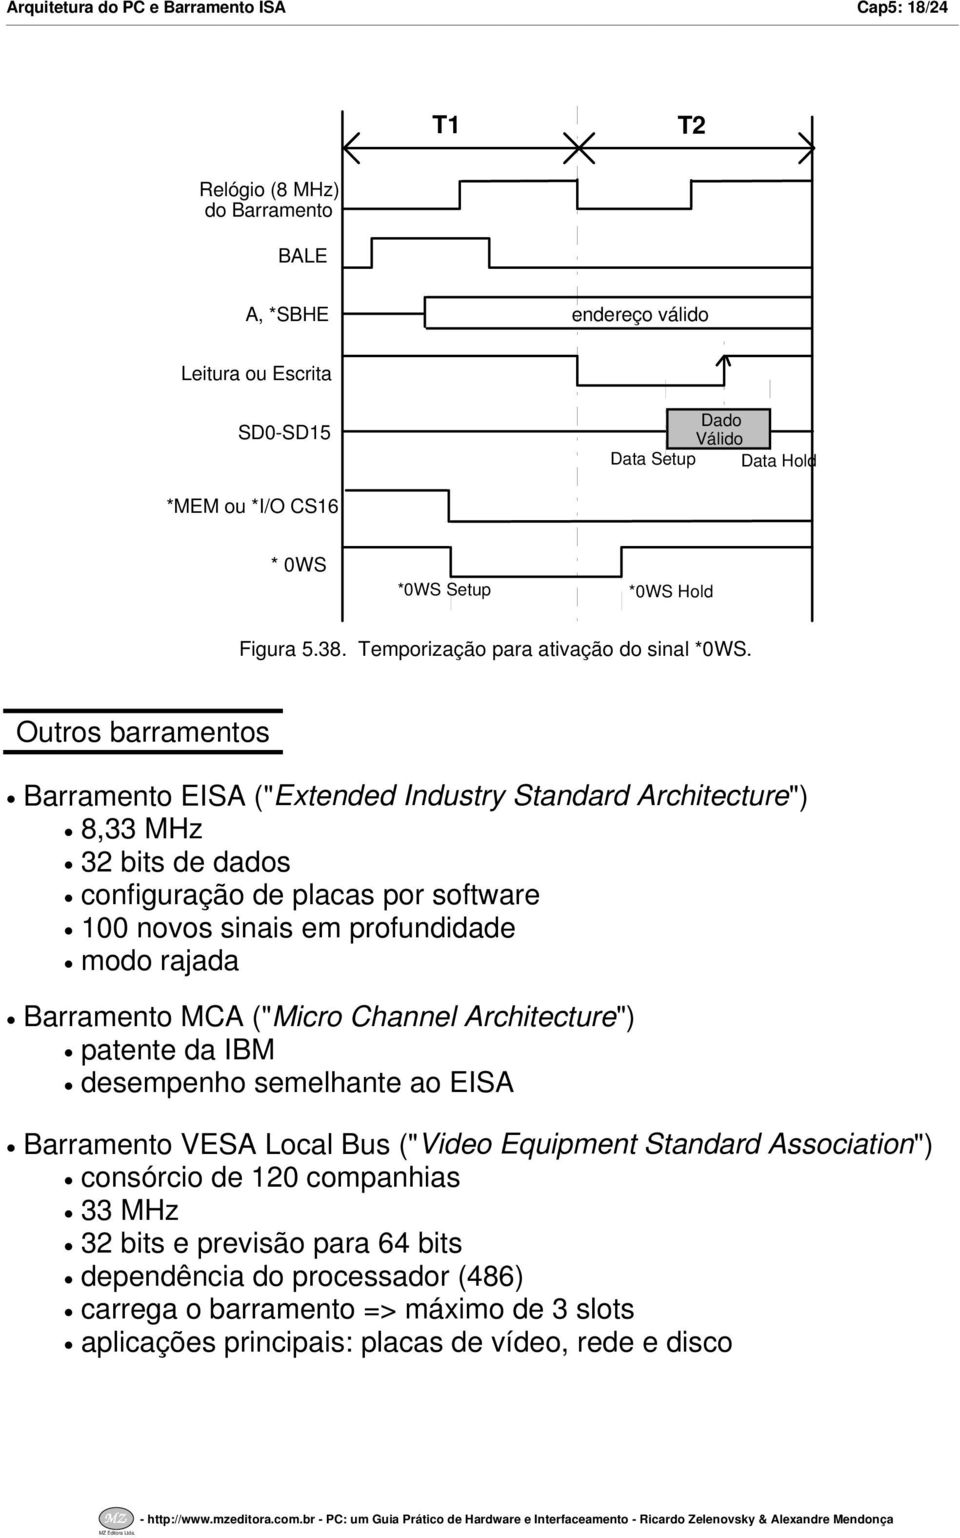 Outros barramentos Barramento EISA ("Extended Industry Standard Architecture") 8,33 MHz 32 bits de dados configuração de placas por software 00 novos sinais em profundidade modo rajada Barramento MCA